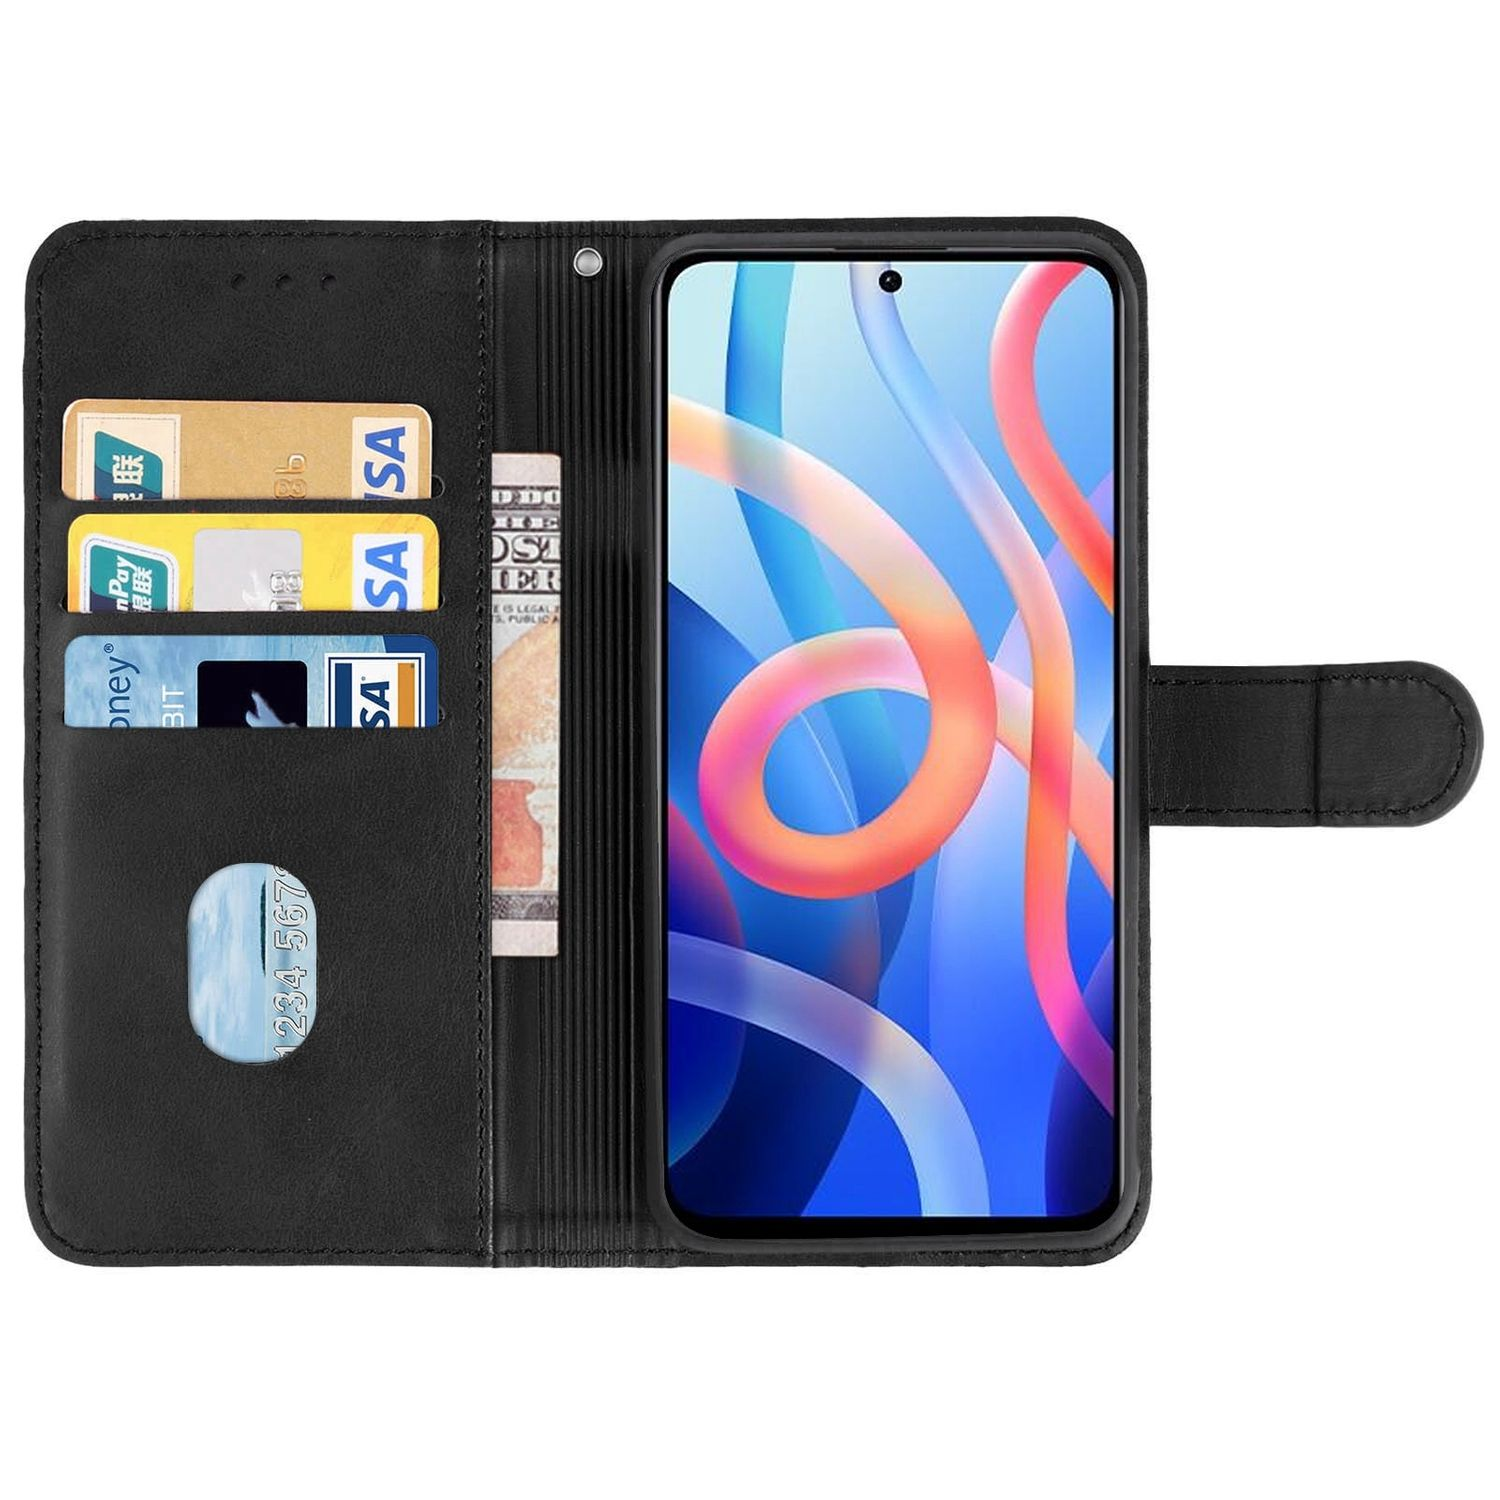 5G, Xiaomi, Poco Schwarz Book Case, Bookcover, Pro DESIGN M4 11 Note / Redmi KÖNIG 5G